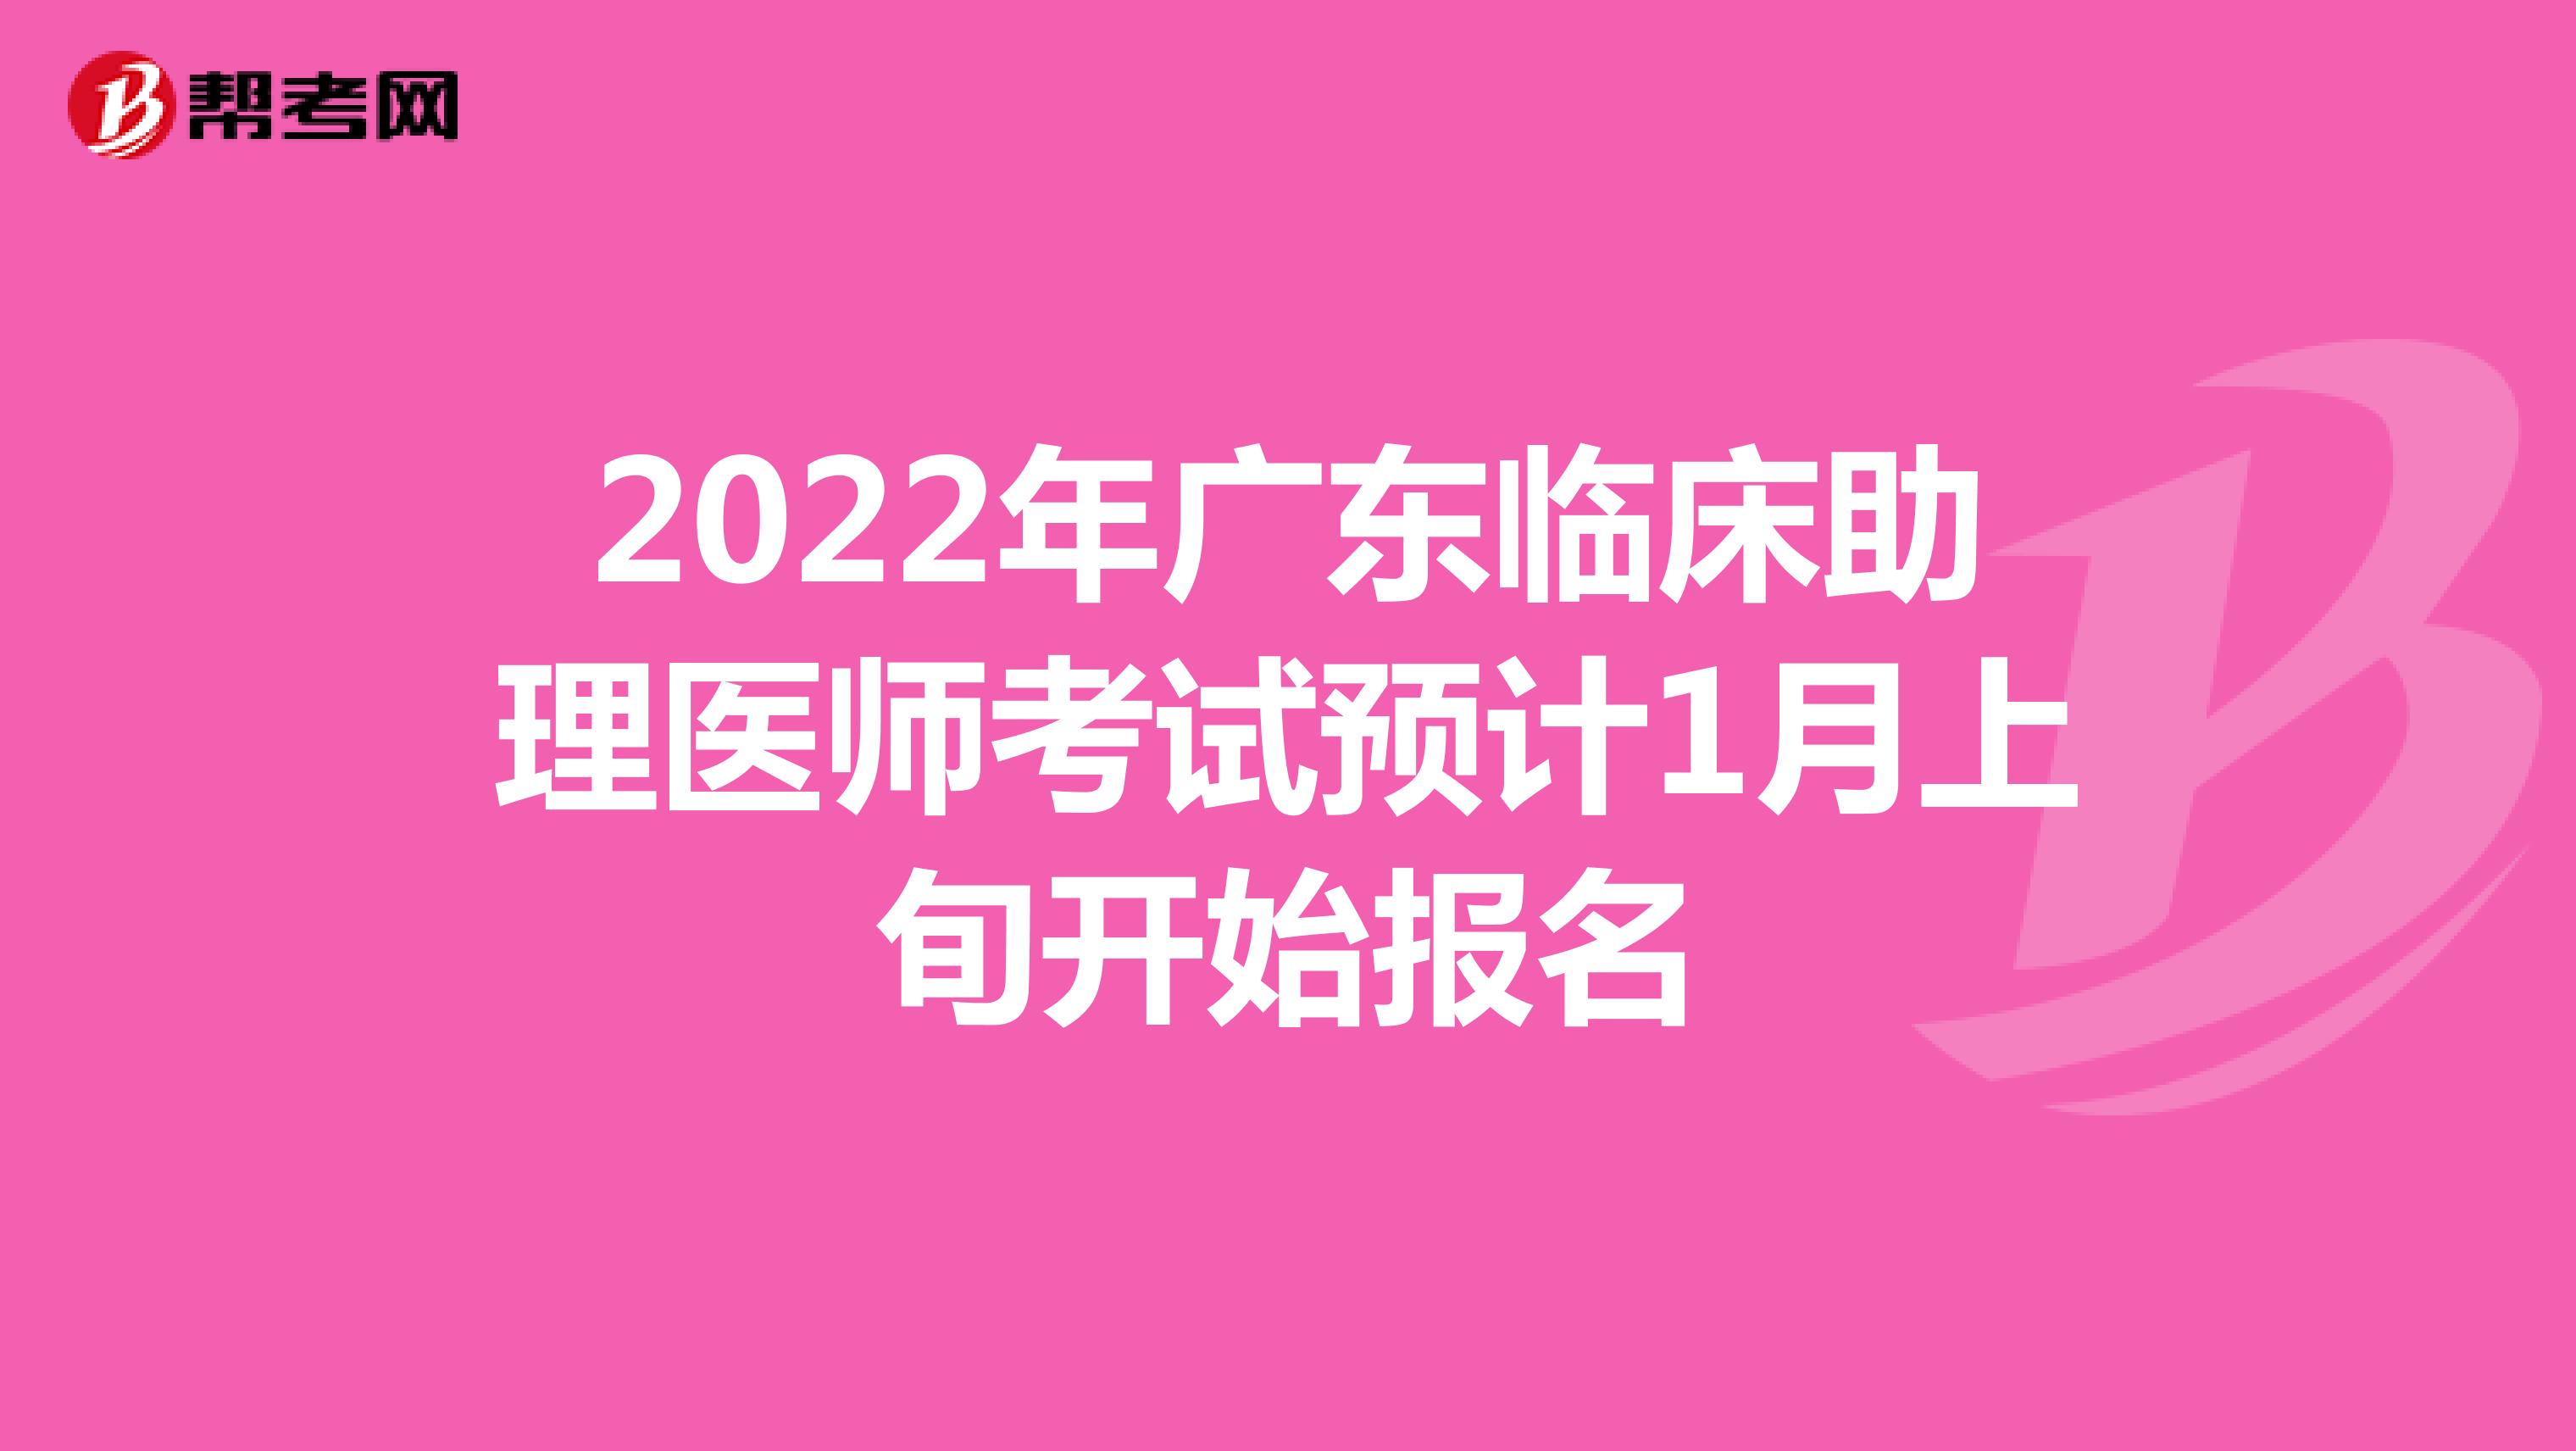 2022年广东临床助理医师考试预计1月上旬开始报名